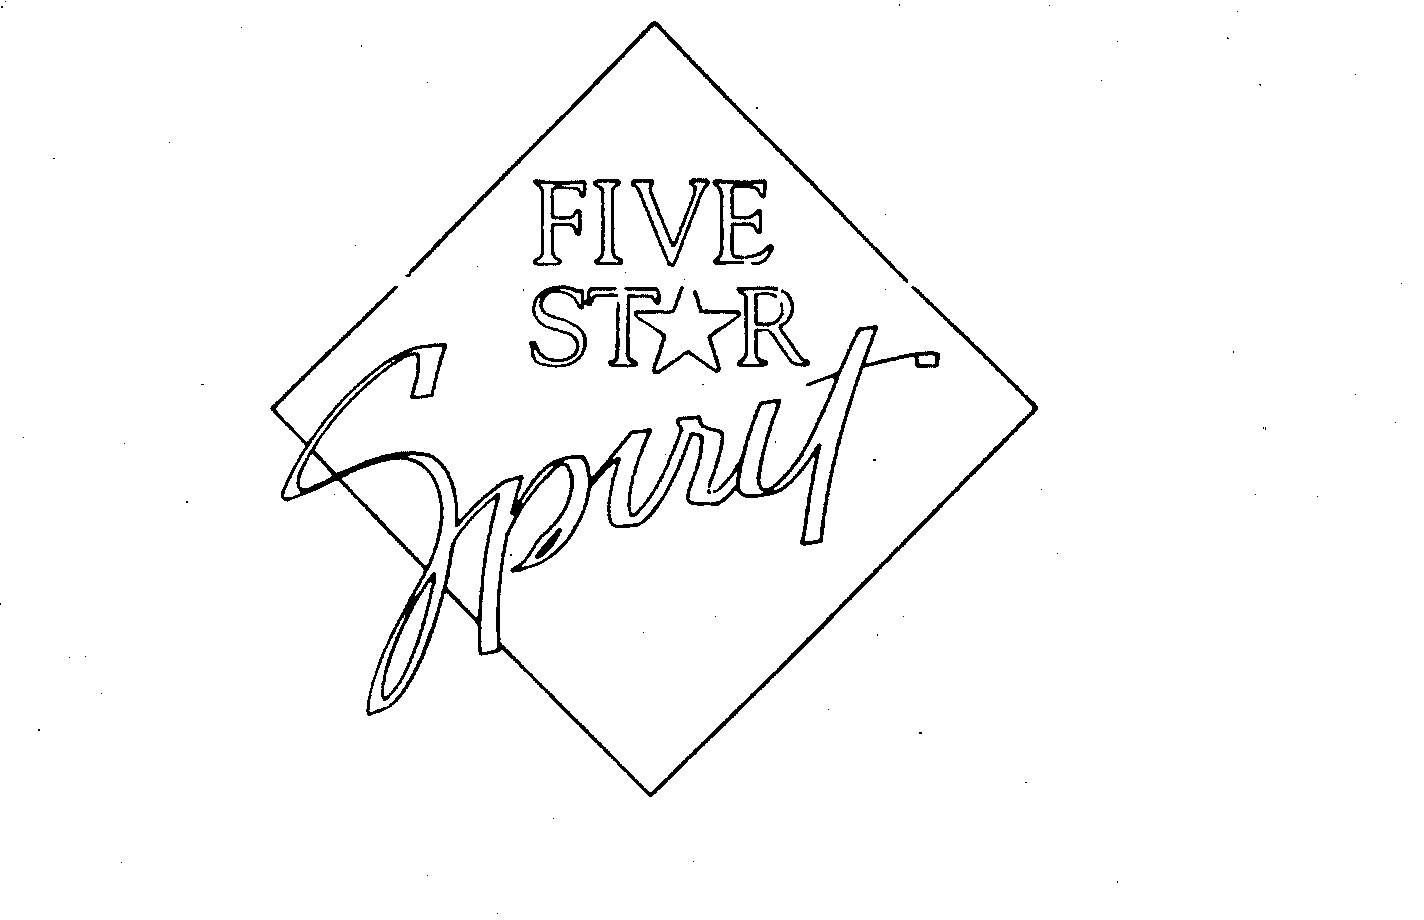  FIVE STAR SPIRIT